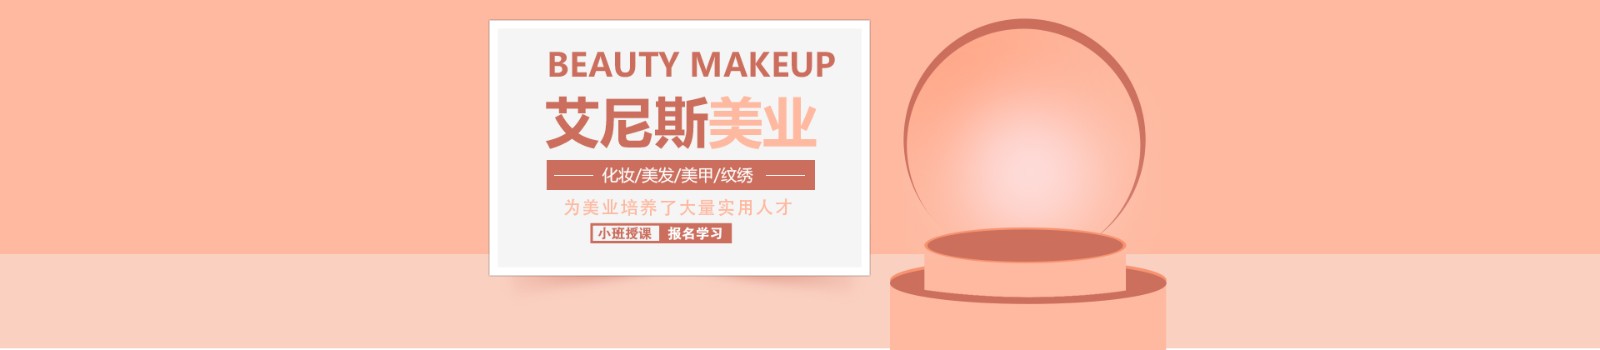 郑州艾尼斯化妆培训学校 横幅广告